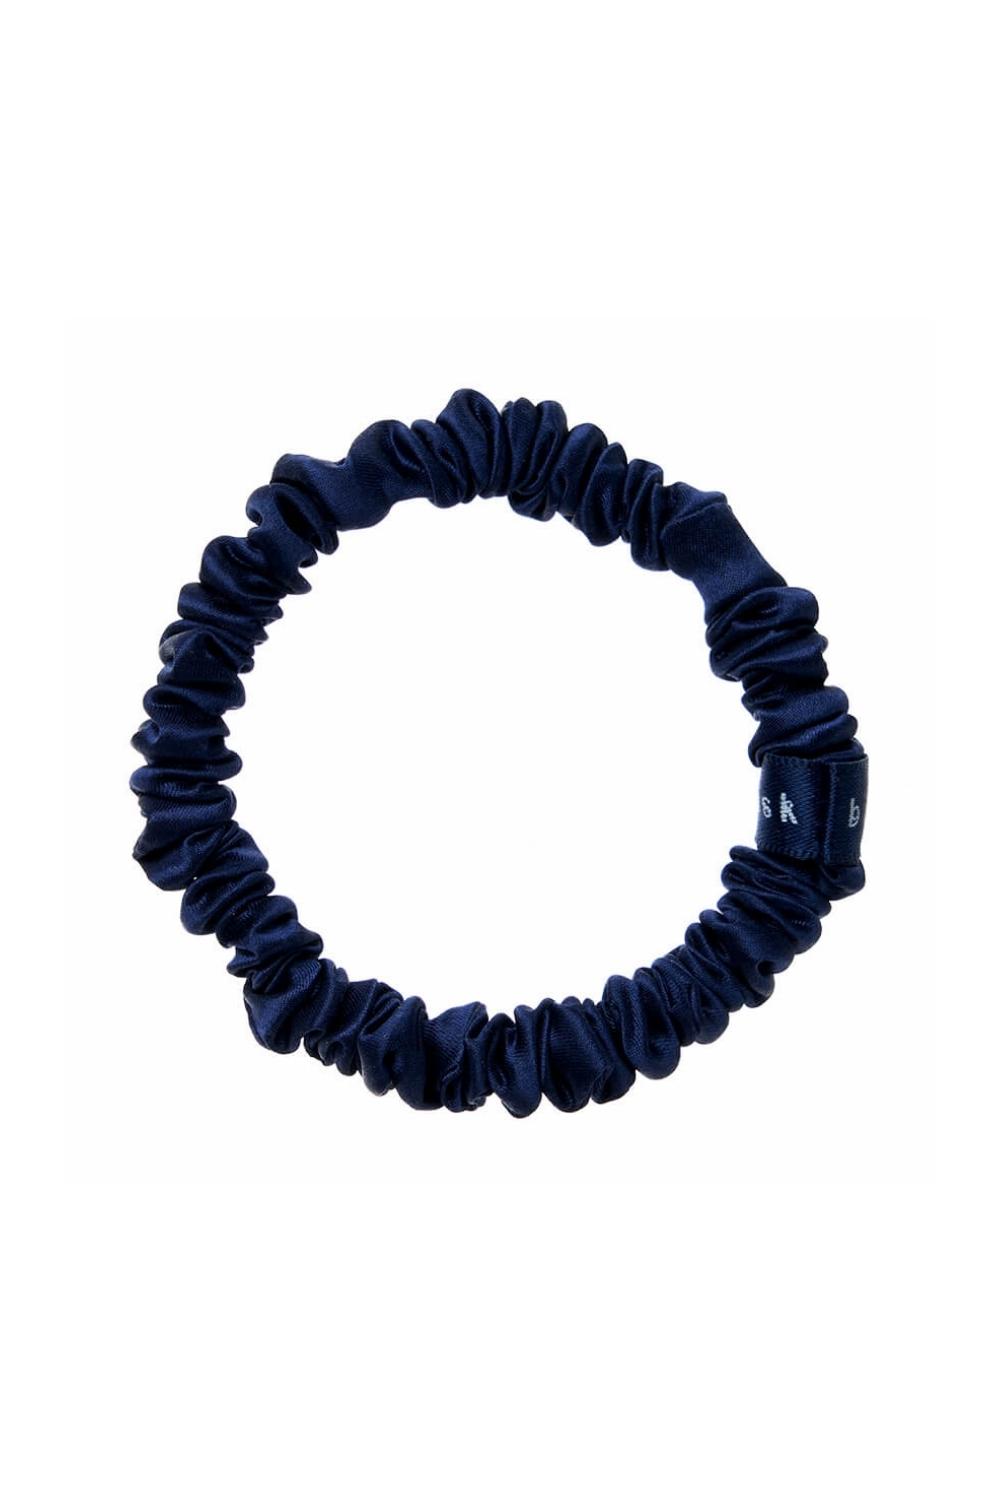 Silk Hair Ties - Navy Blue - BASK™